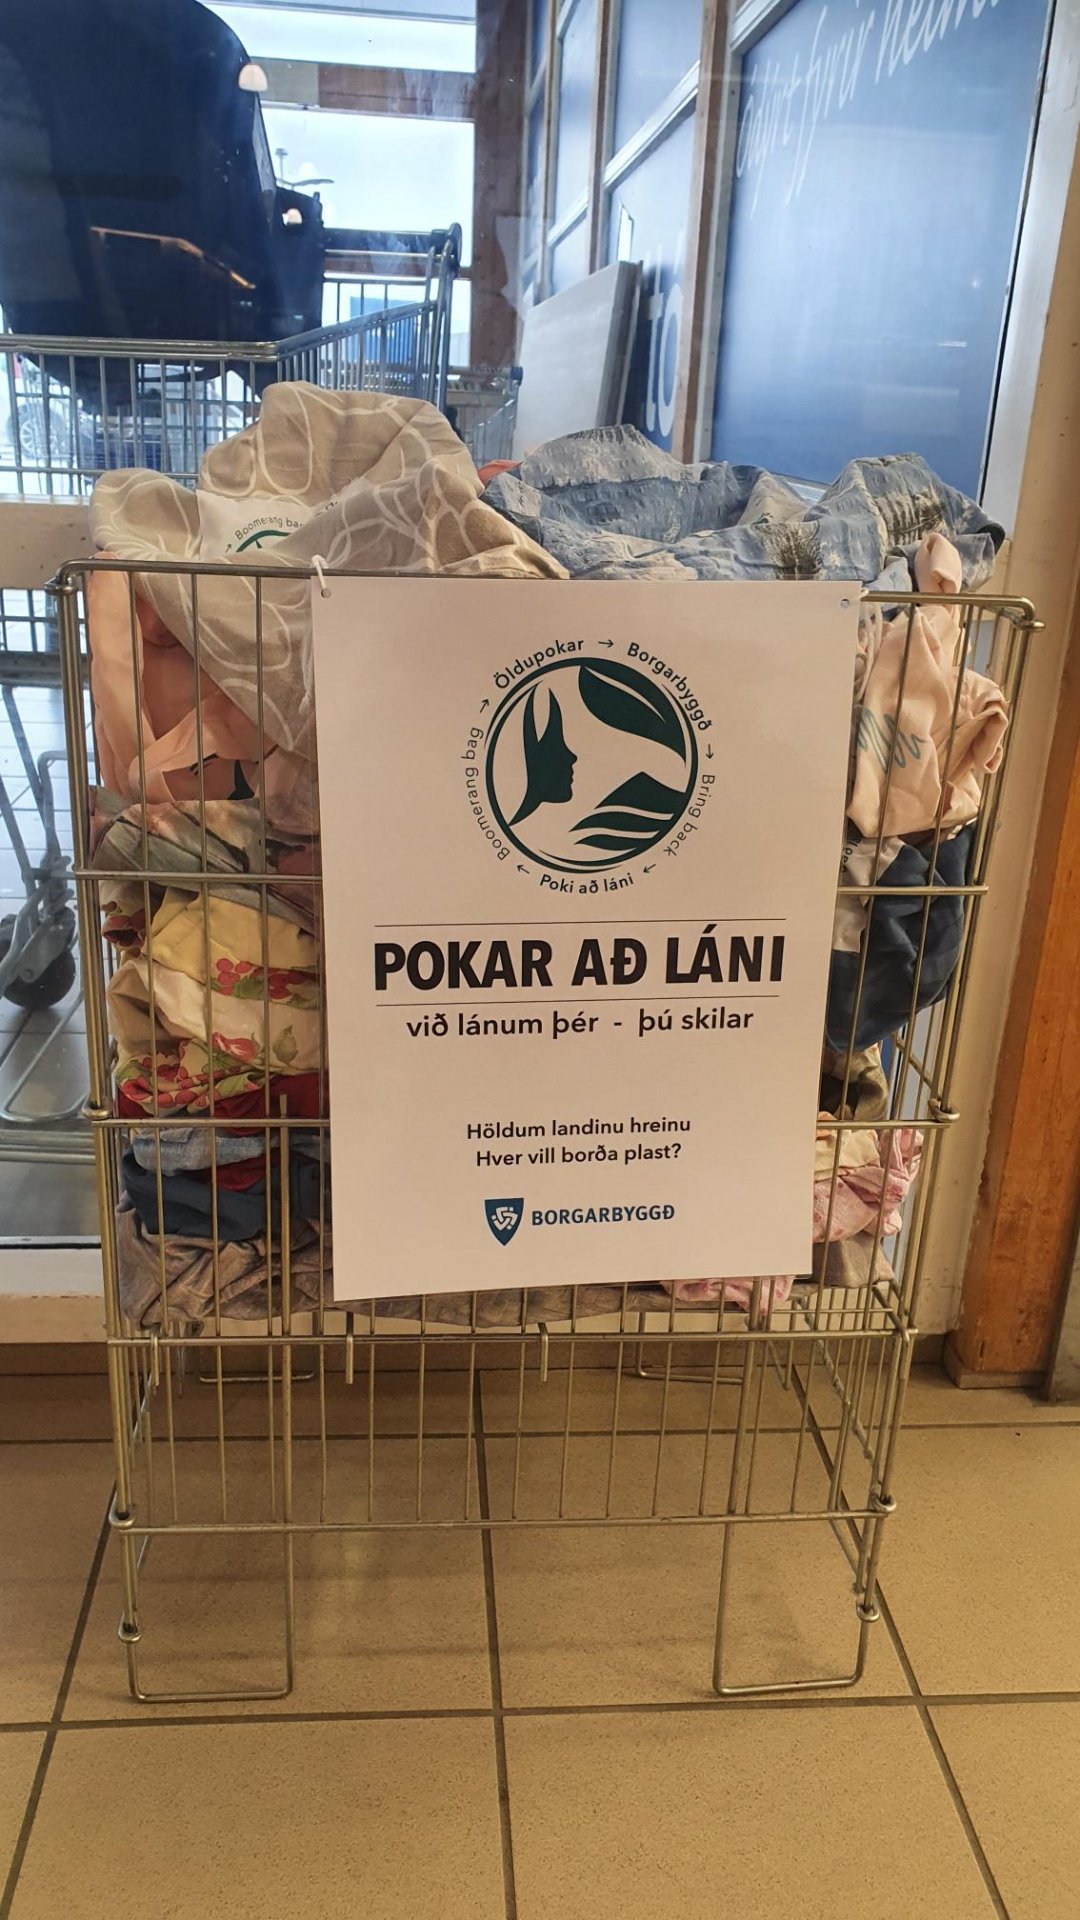 Featured image for “Pokar að láni”